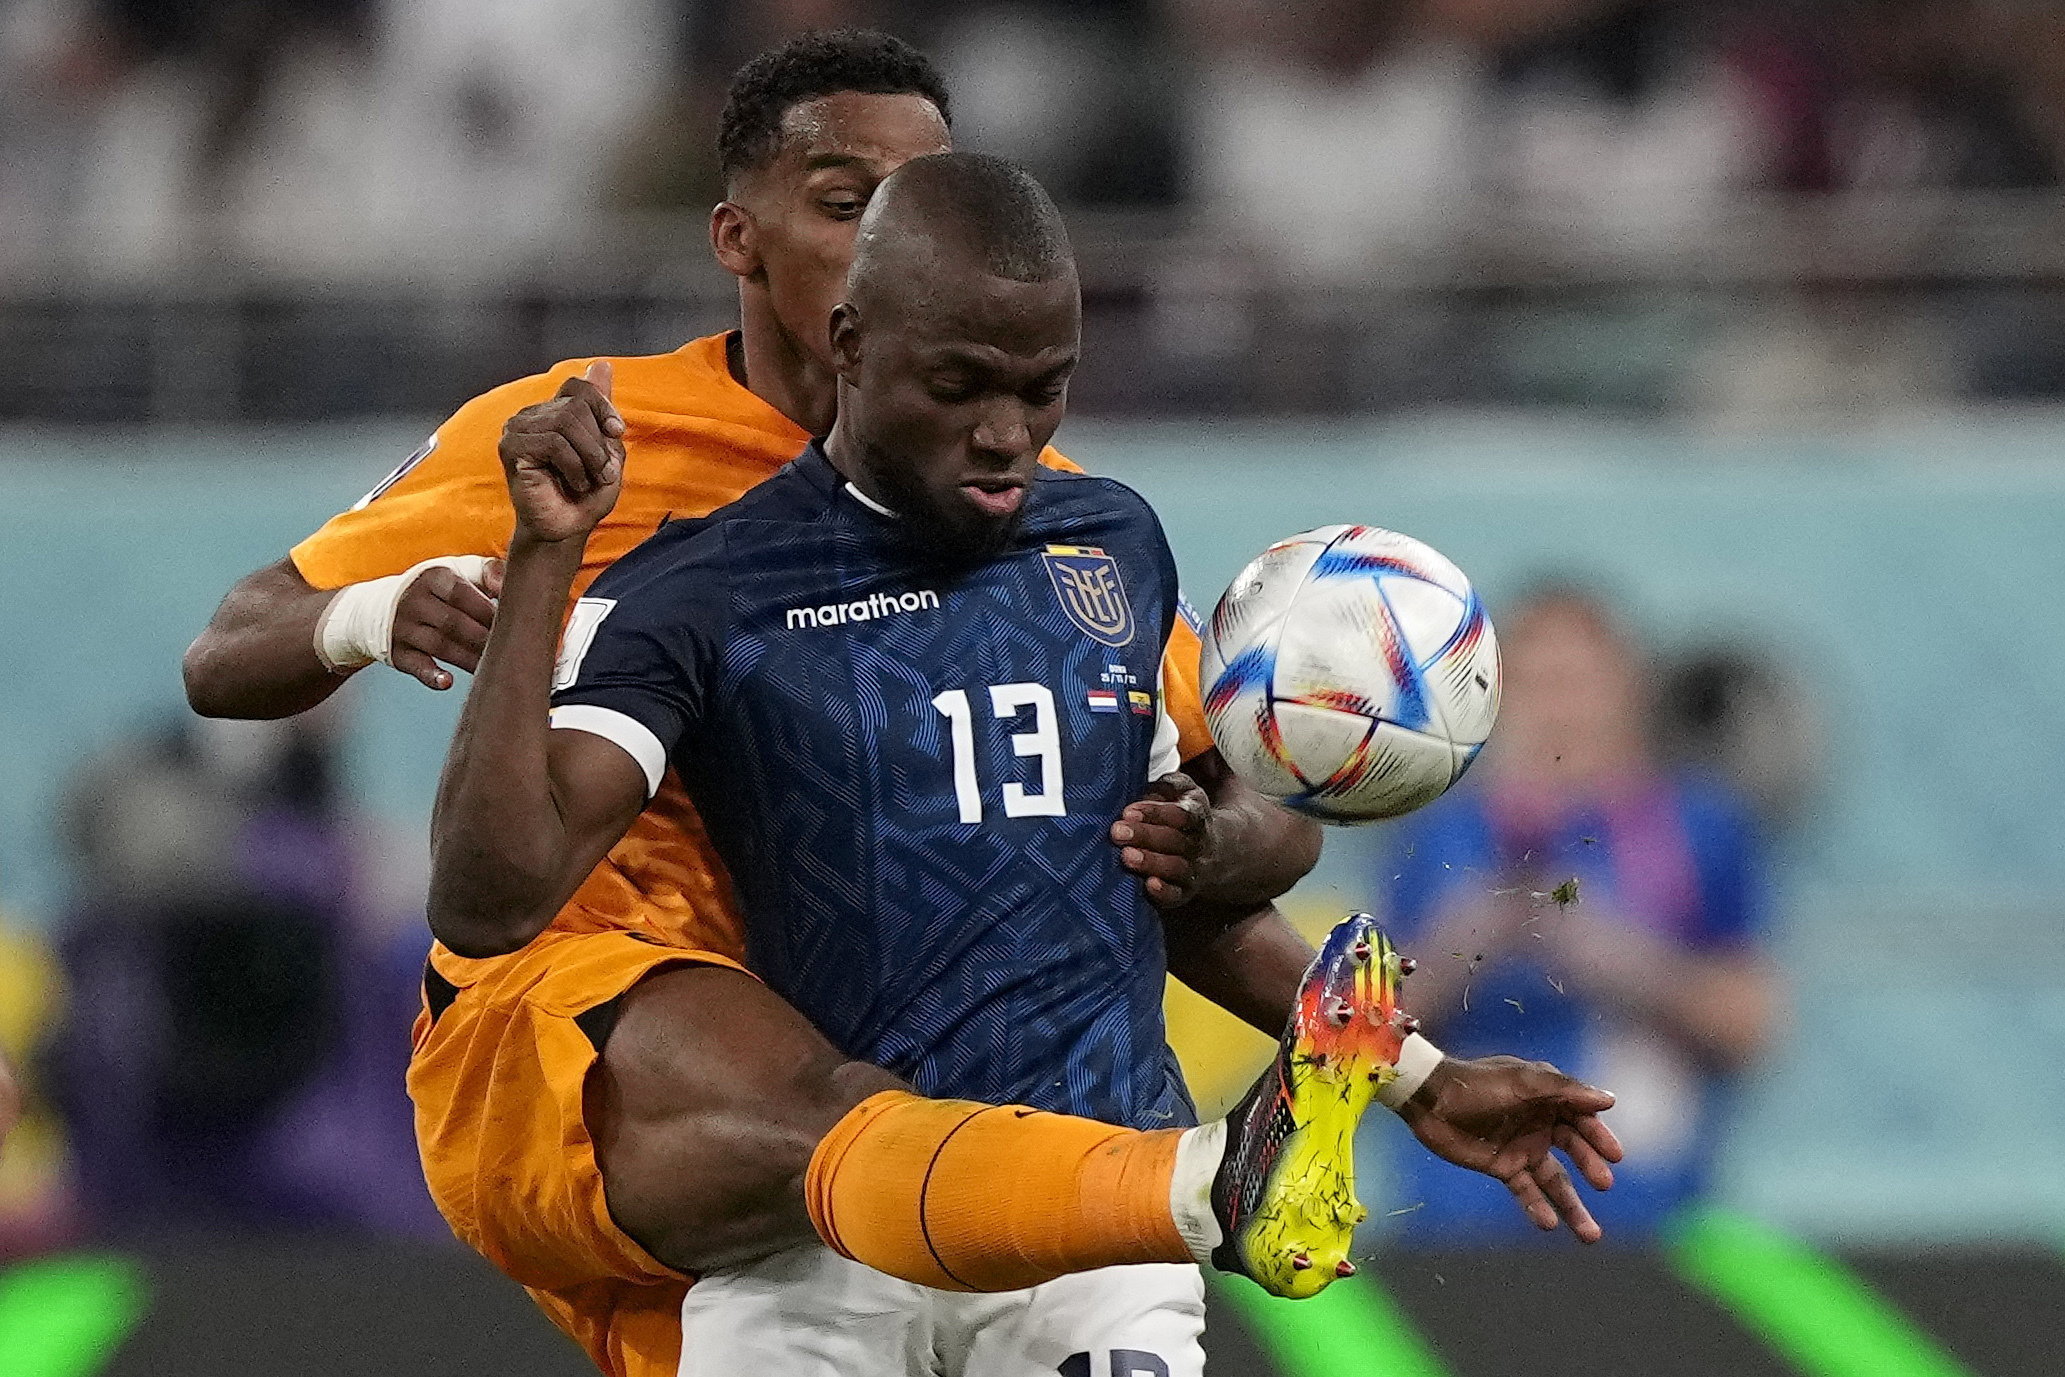 Döntetlent játszott Hollandia Ecuadorral, Katar kiesett